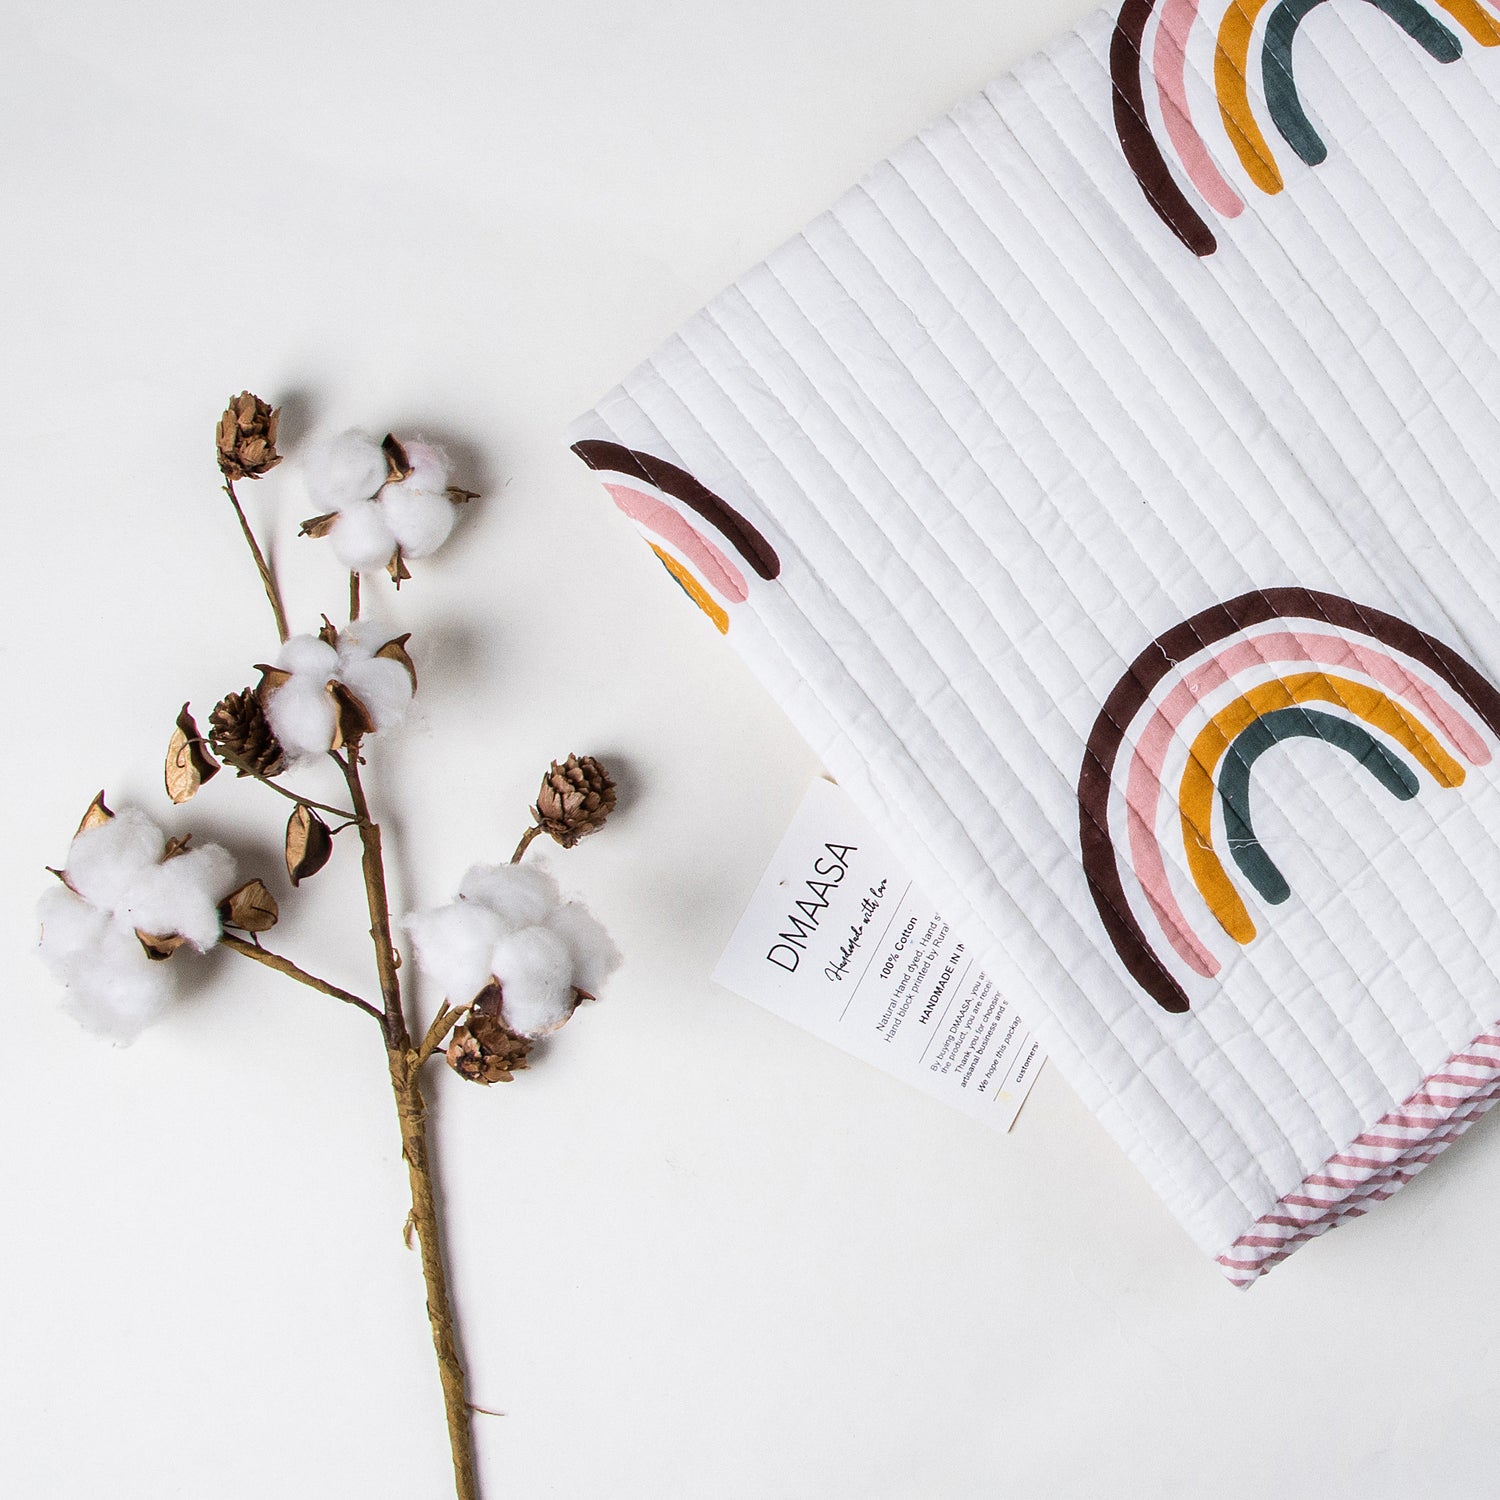 Multicolor Rainbow Muslin Cotton Receiving Blankets